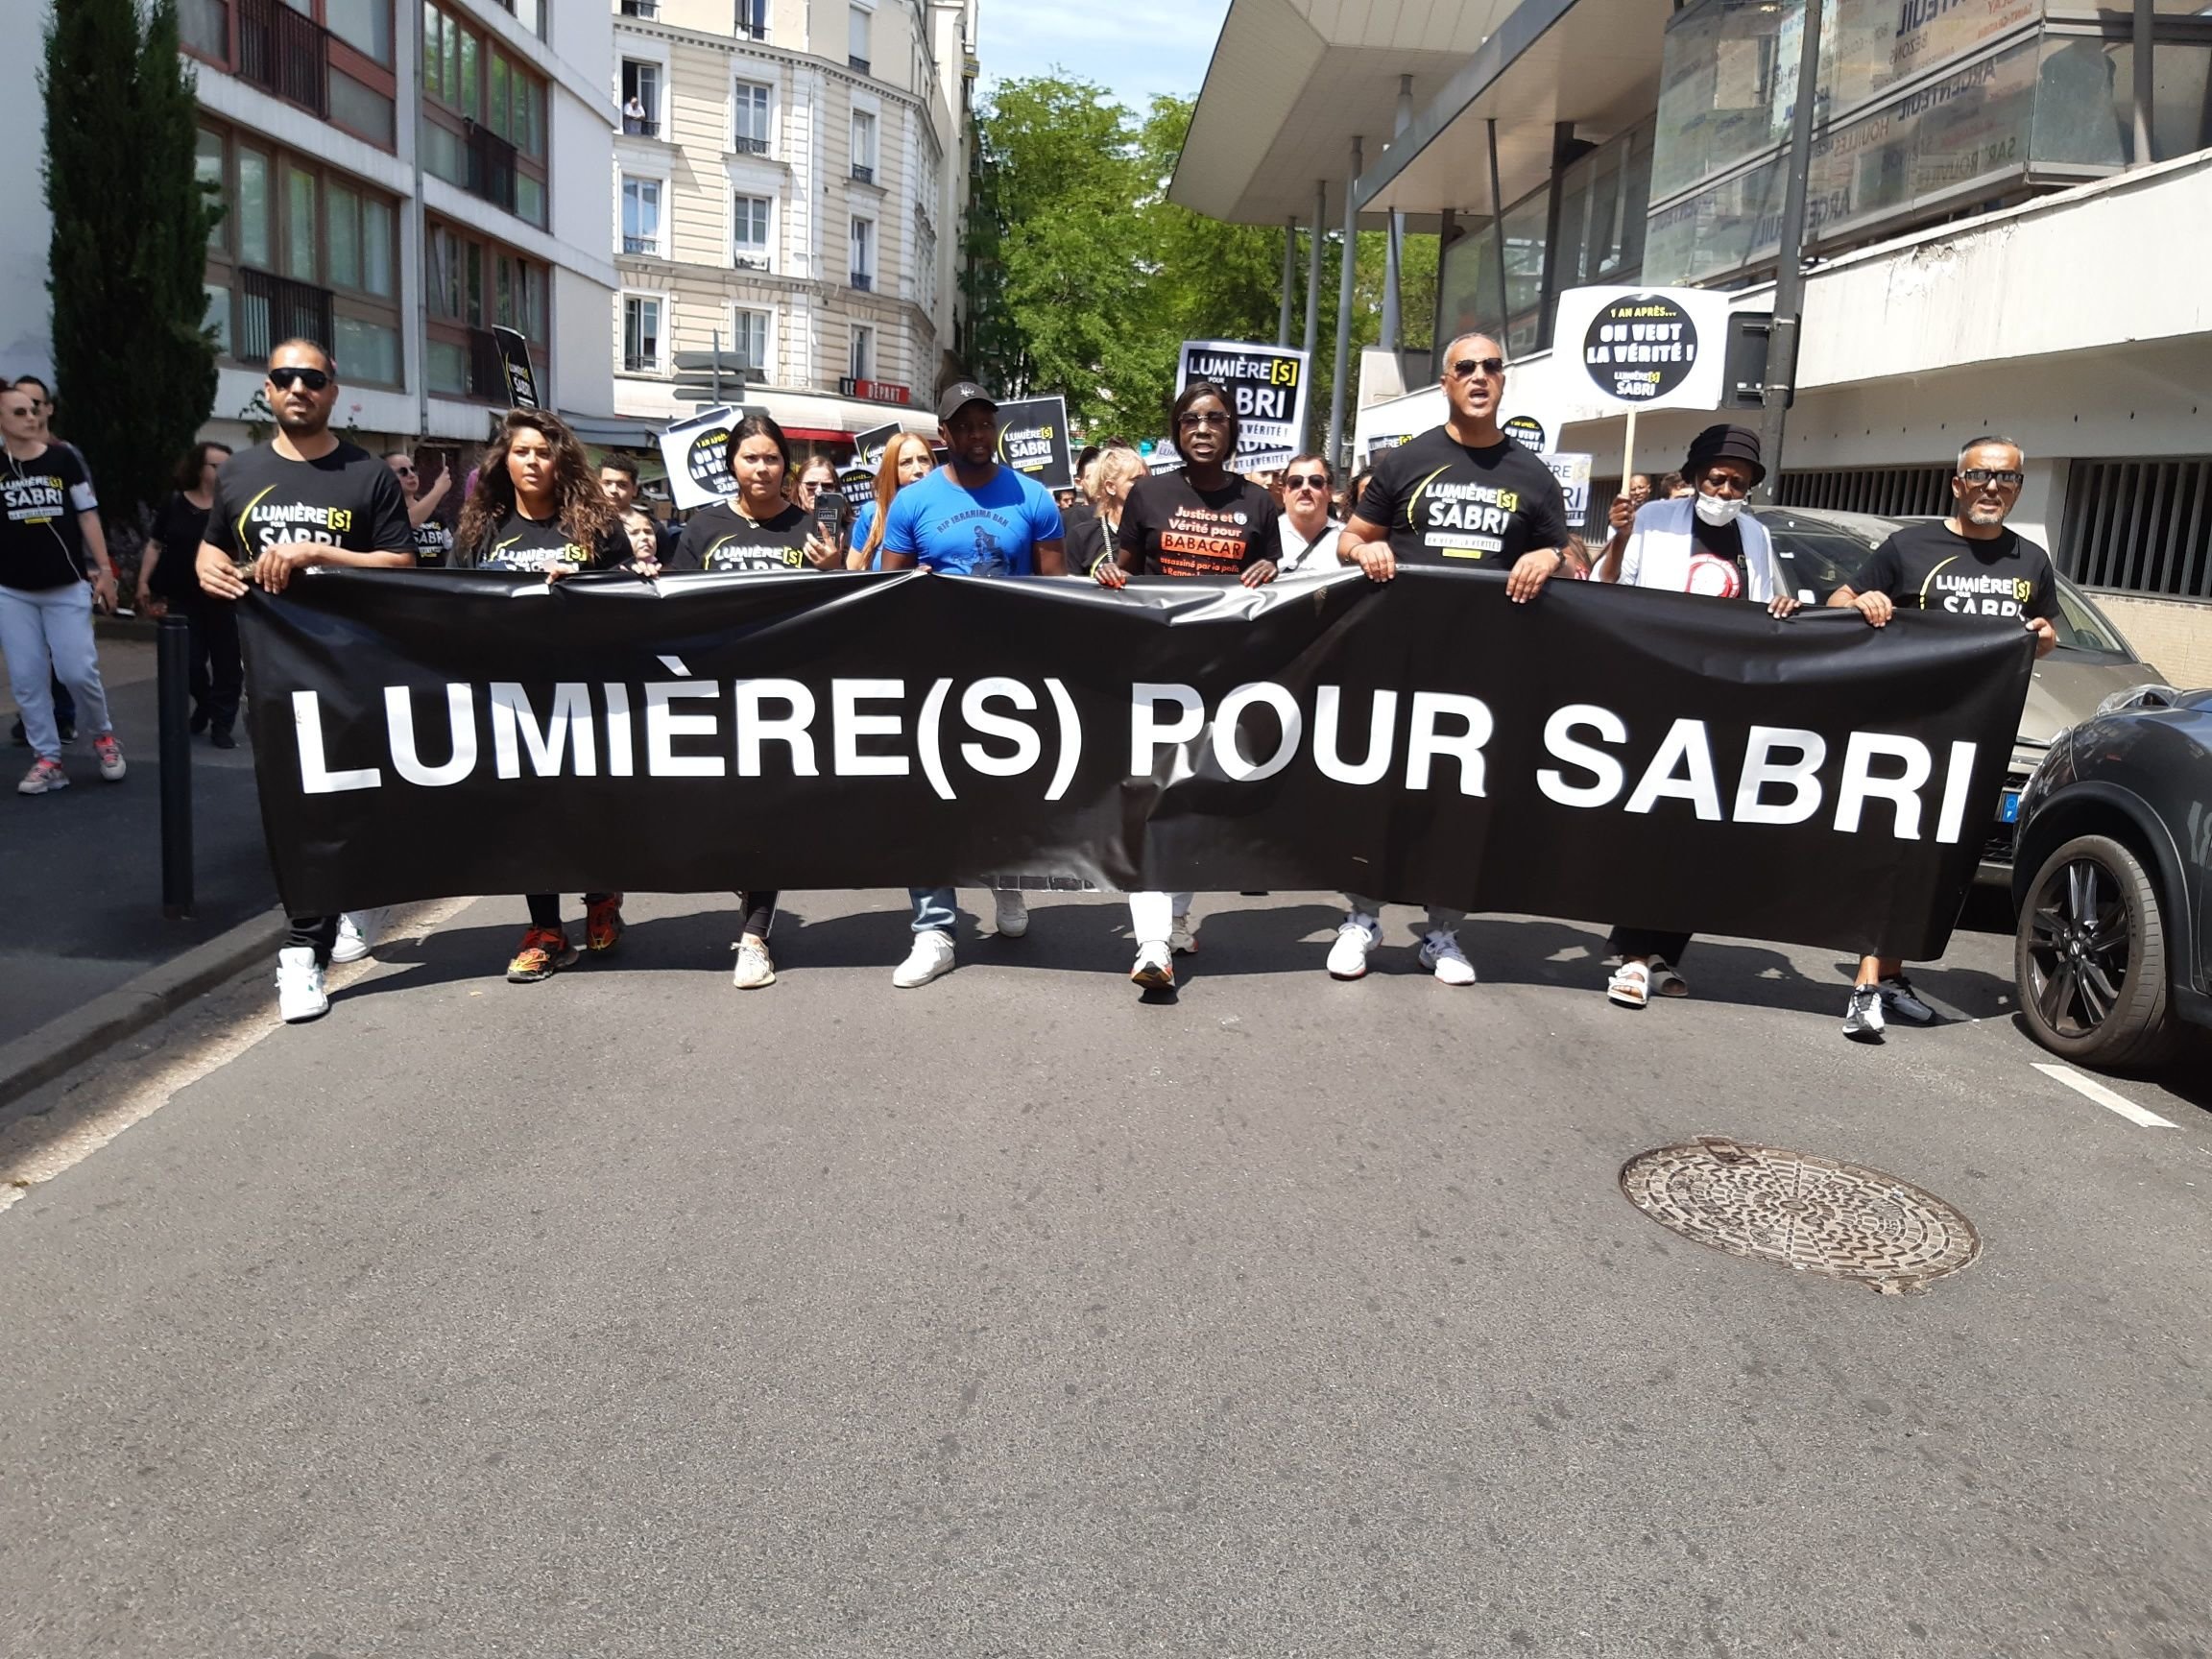 Argenteuil (Val-d'Oise) ce samedi. Une centaine de personnes ont participé à la marche organisée en hommage à Sabri, jeune homme de 18 ans décédé en 2020 au guidon de sa moto. LP/Christophe Lefèvre